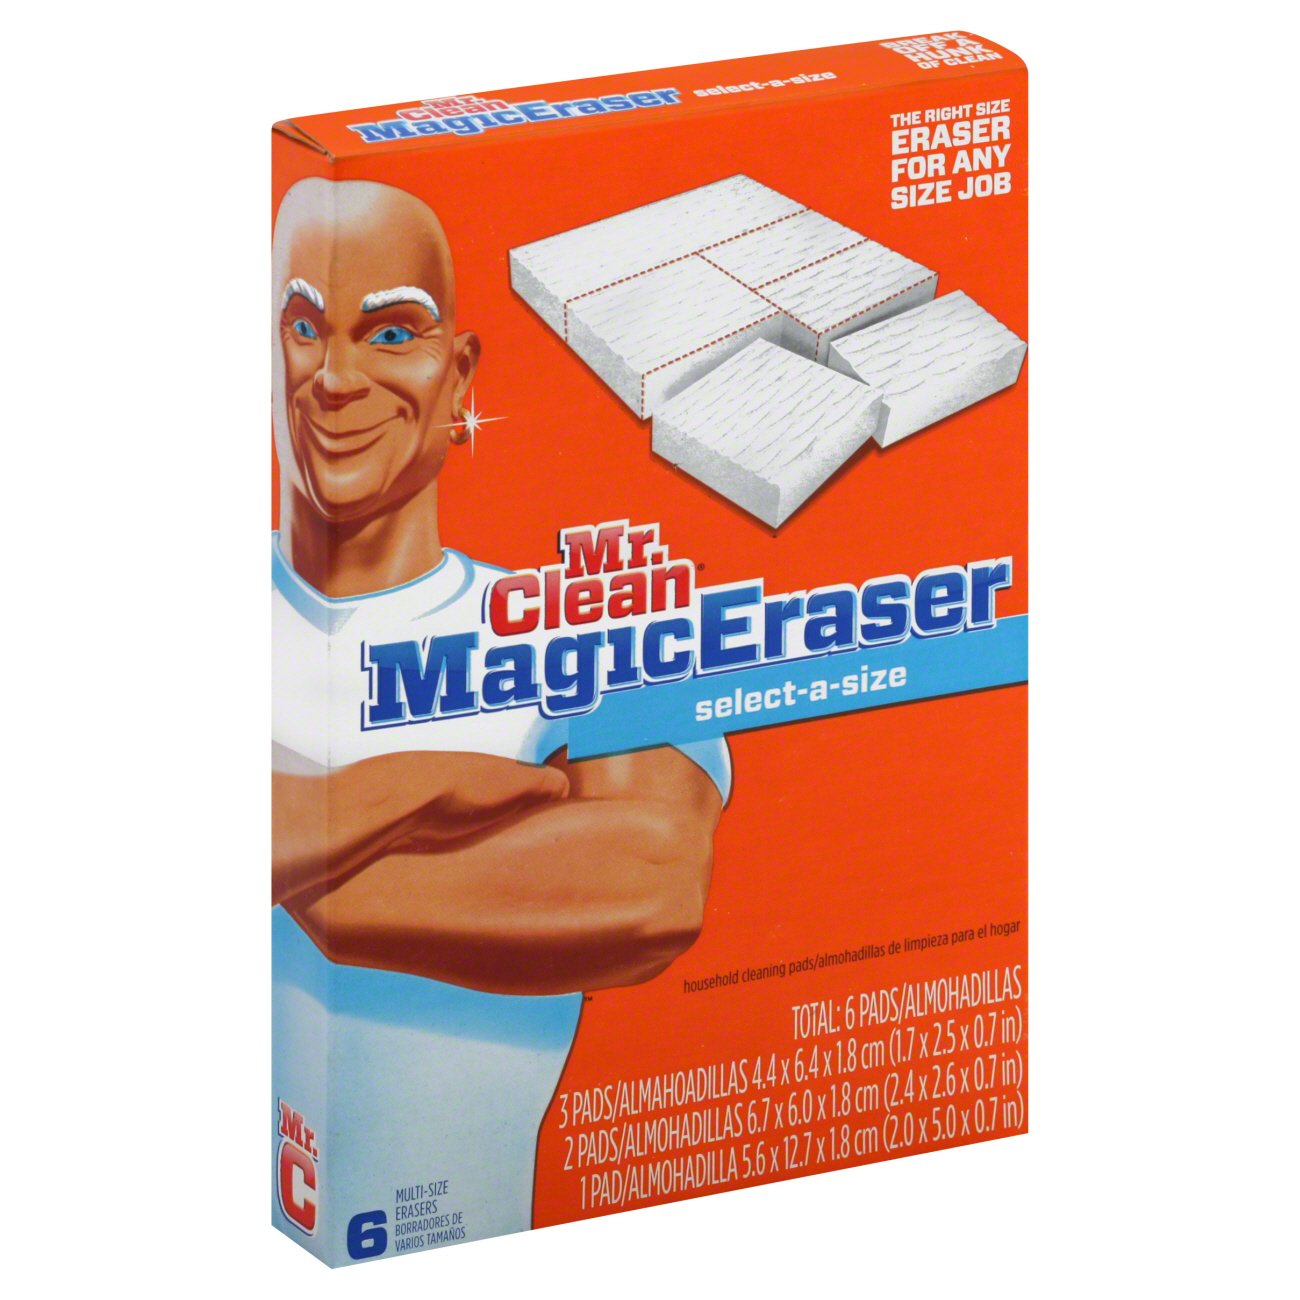 Mr. Clean Magic Eraser luôn là lựa chọn số một cho việc làm sạch trong nhà. An toàn, dễ sử dụng và hết sức hiệu quả, sản phẩm này sẽ giúp bạn dễ dàng vệ sinh mọi vết bẩn và khuẩn trên bề mặt. Nhấn vào hình ảnh liên quan để biết thêm chi tiết!